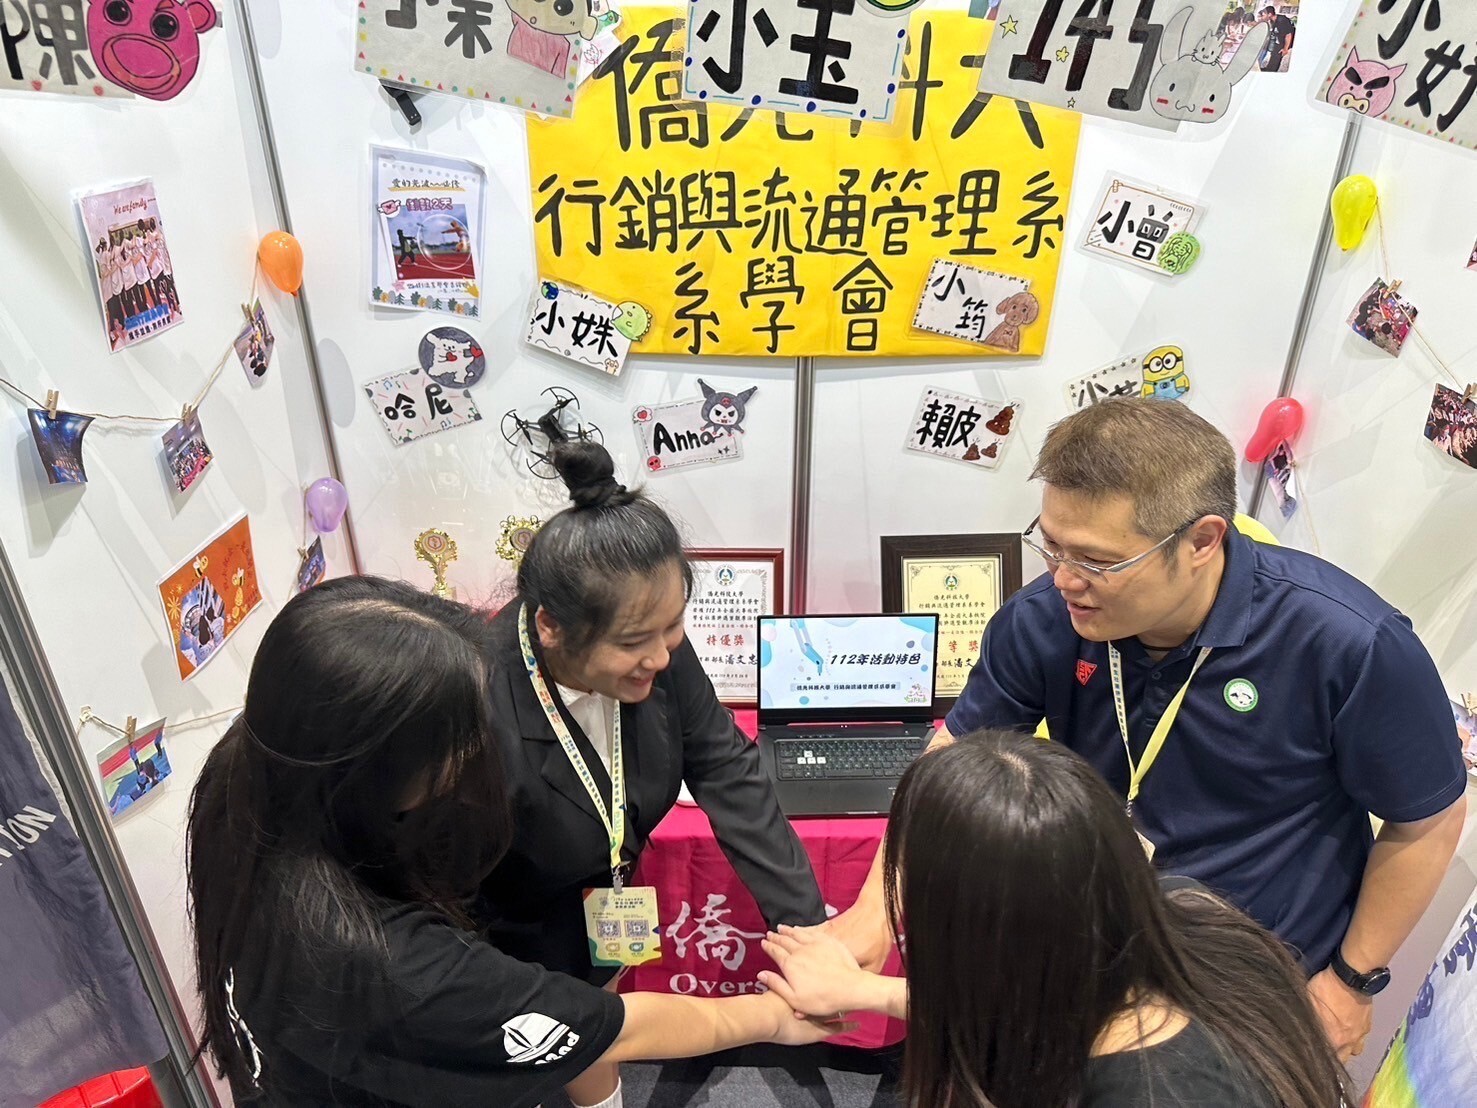 僑光行流系系學會指導老師王仁博帶領同學參與評選活動(圖/僑光行流系提供)。